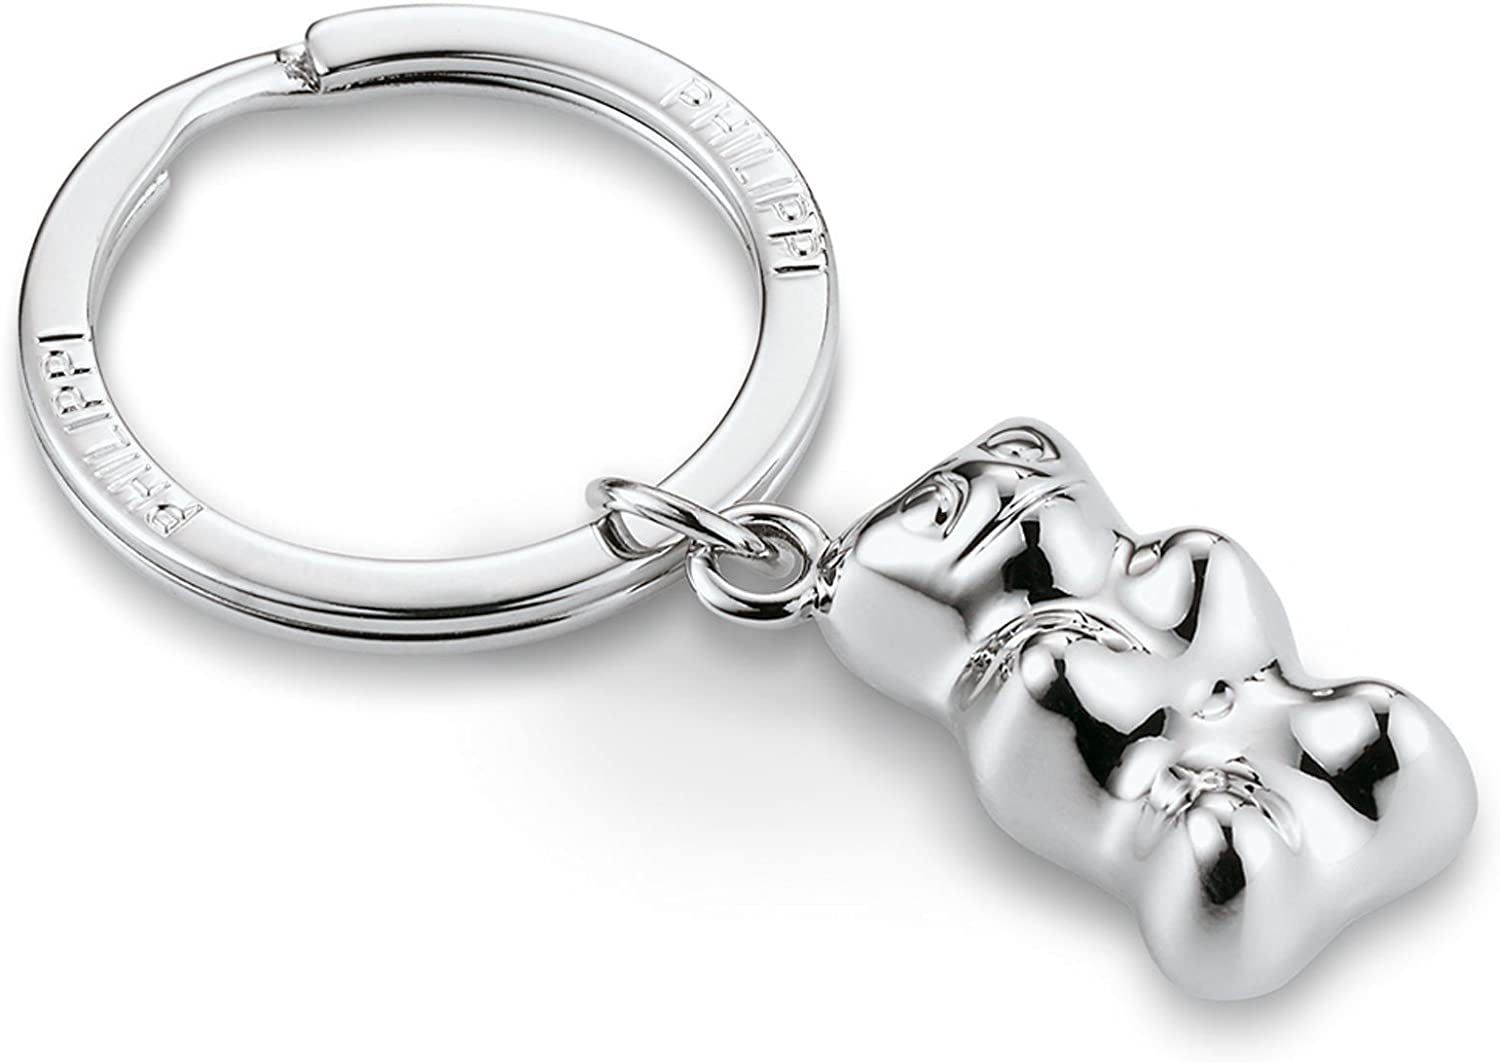 Philippi Teddy Key Ring, Polished Nickel